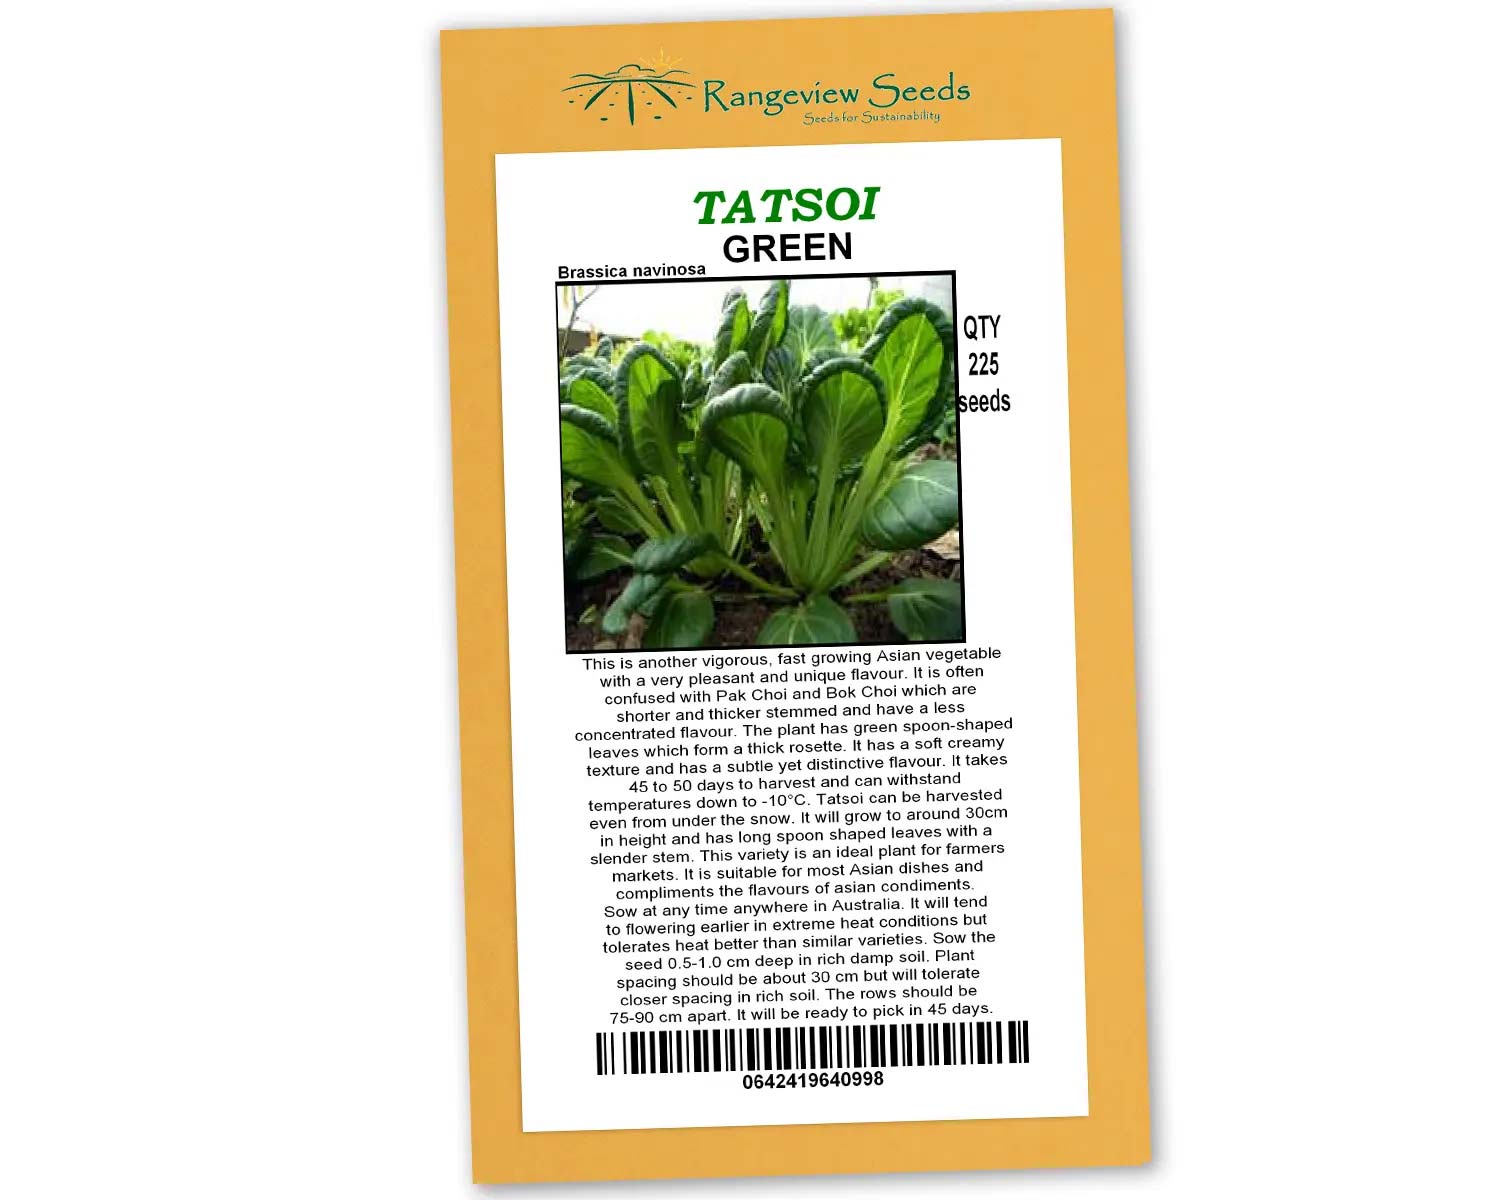 Tatsoi Green - Rangeview Seeds